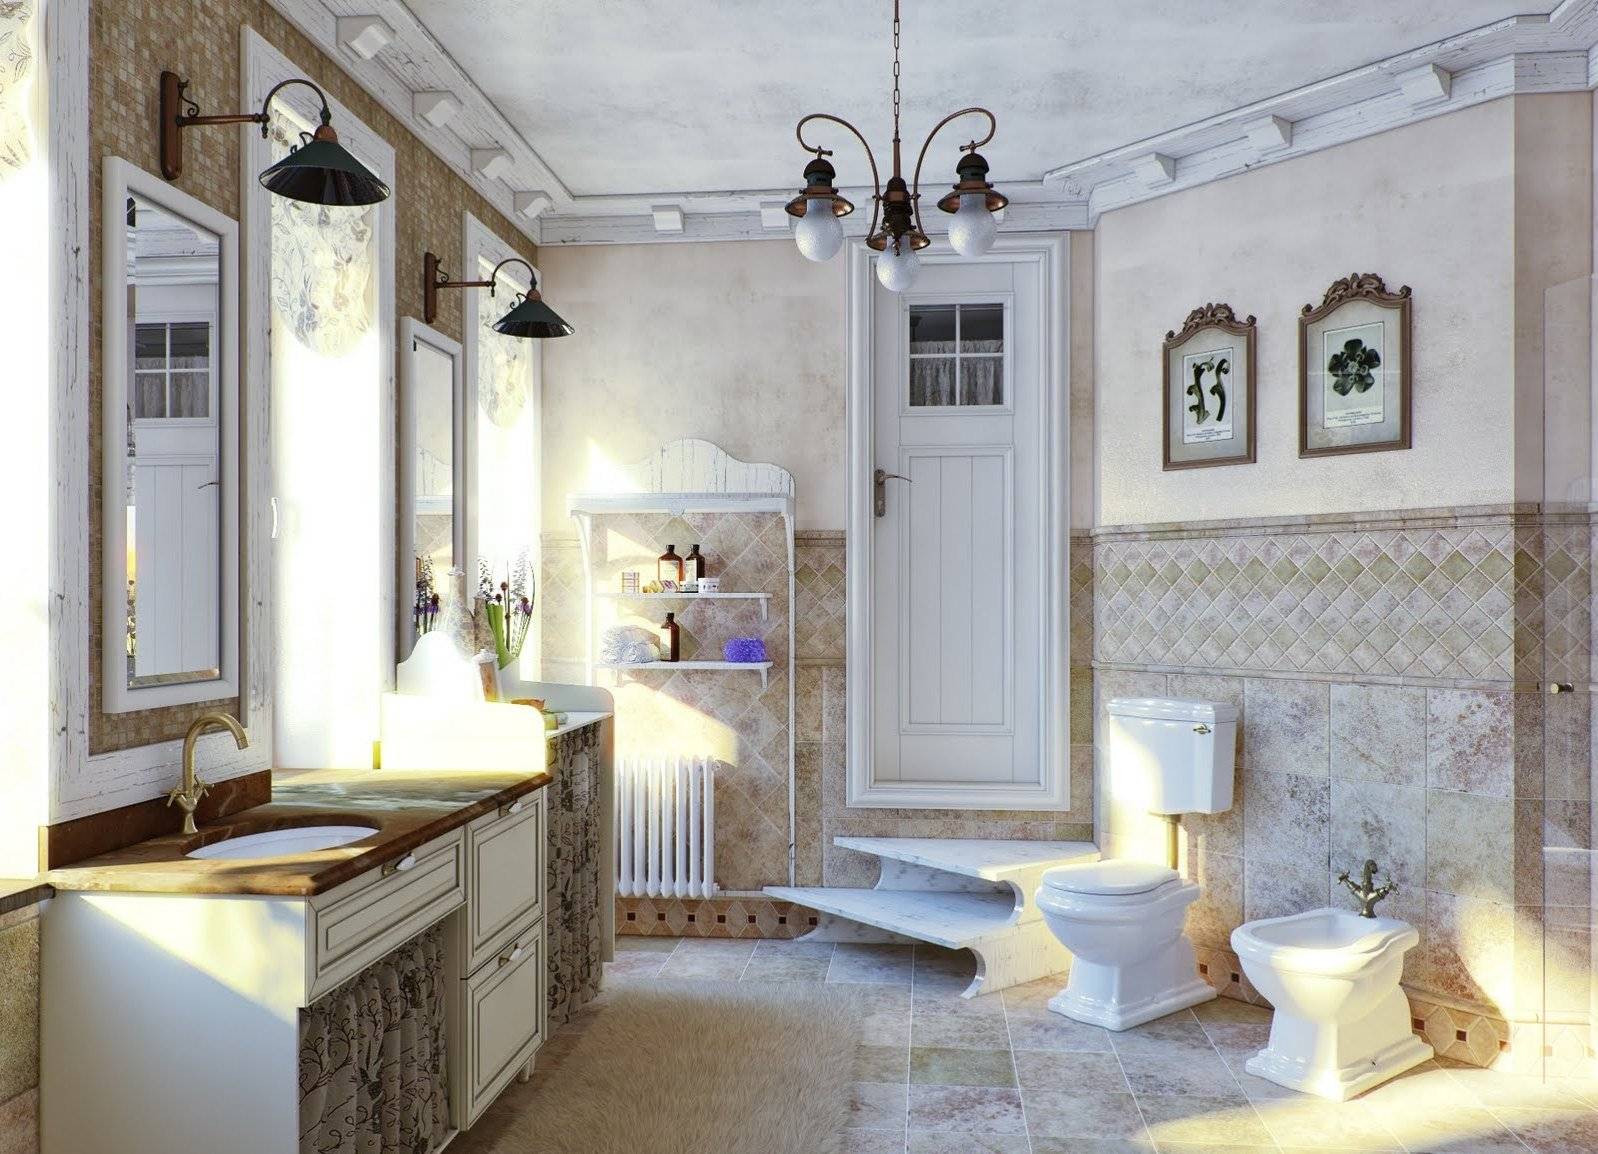 Ванная комната в стиле прованс: фото модных интерьеров